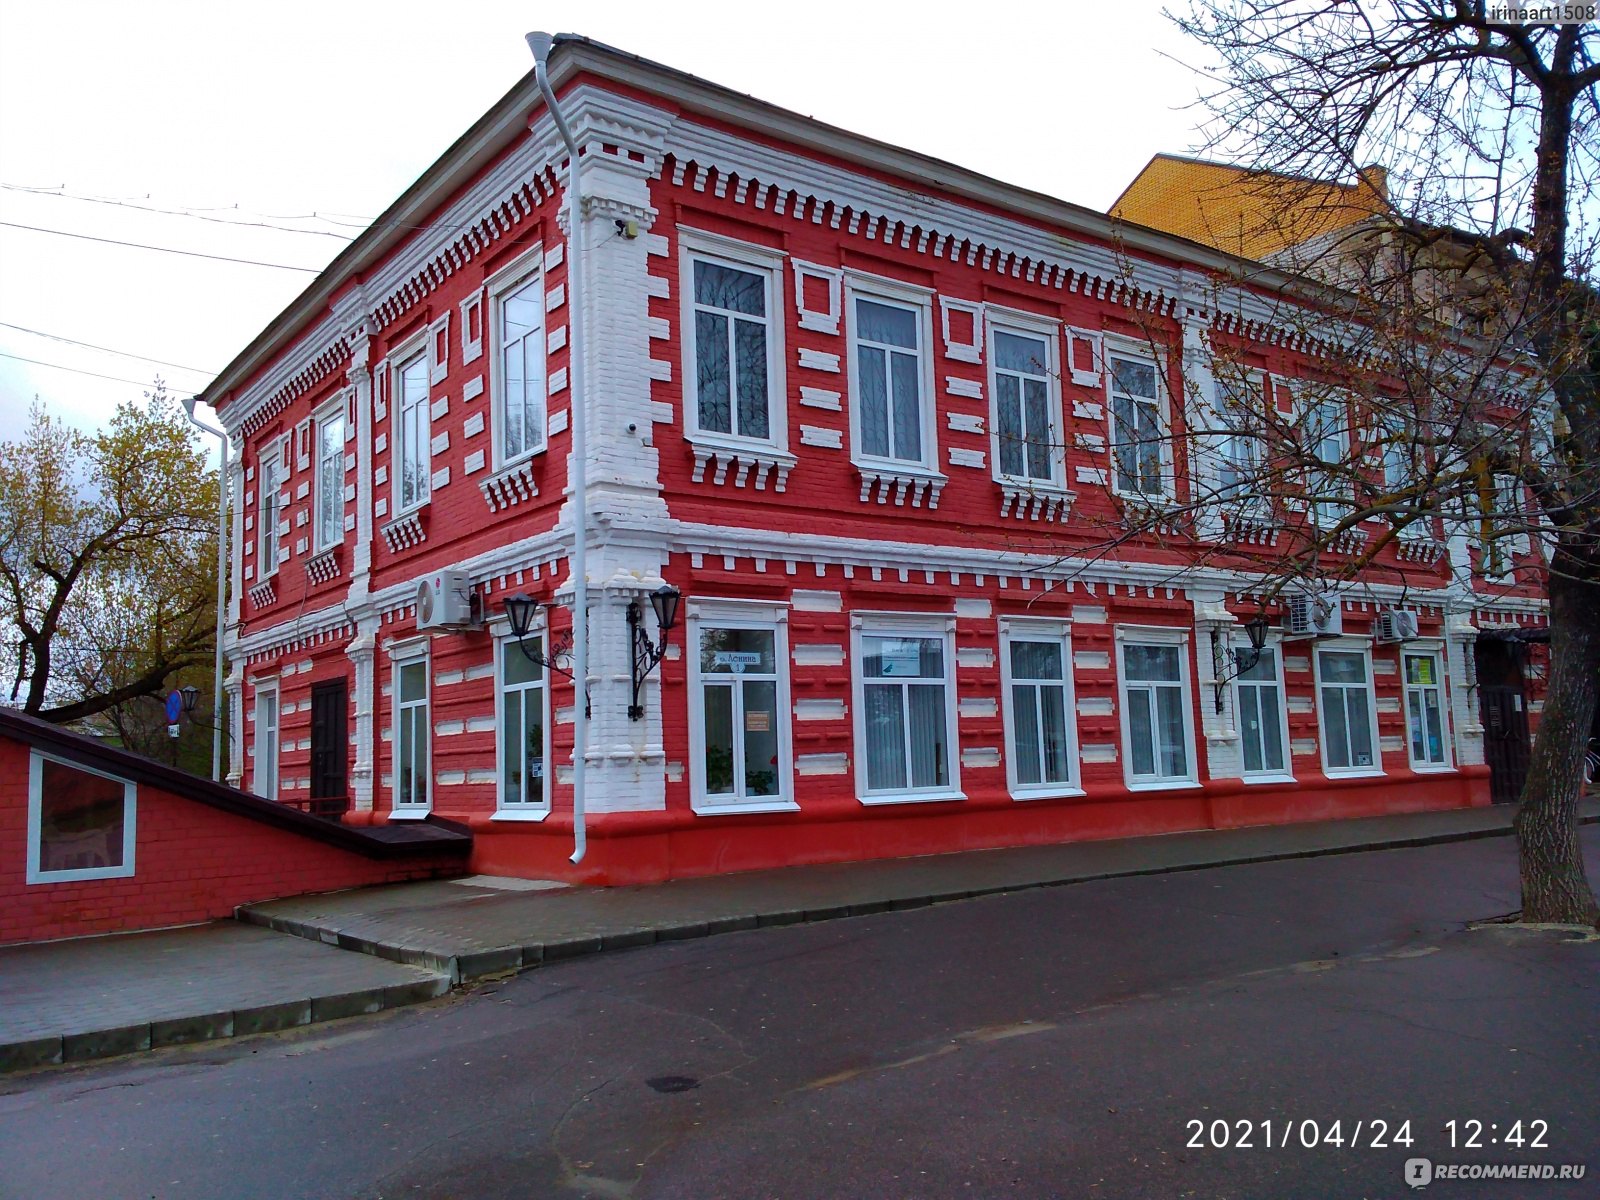 Мебельные магазины в городе Урюпинск